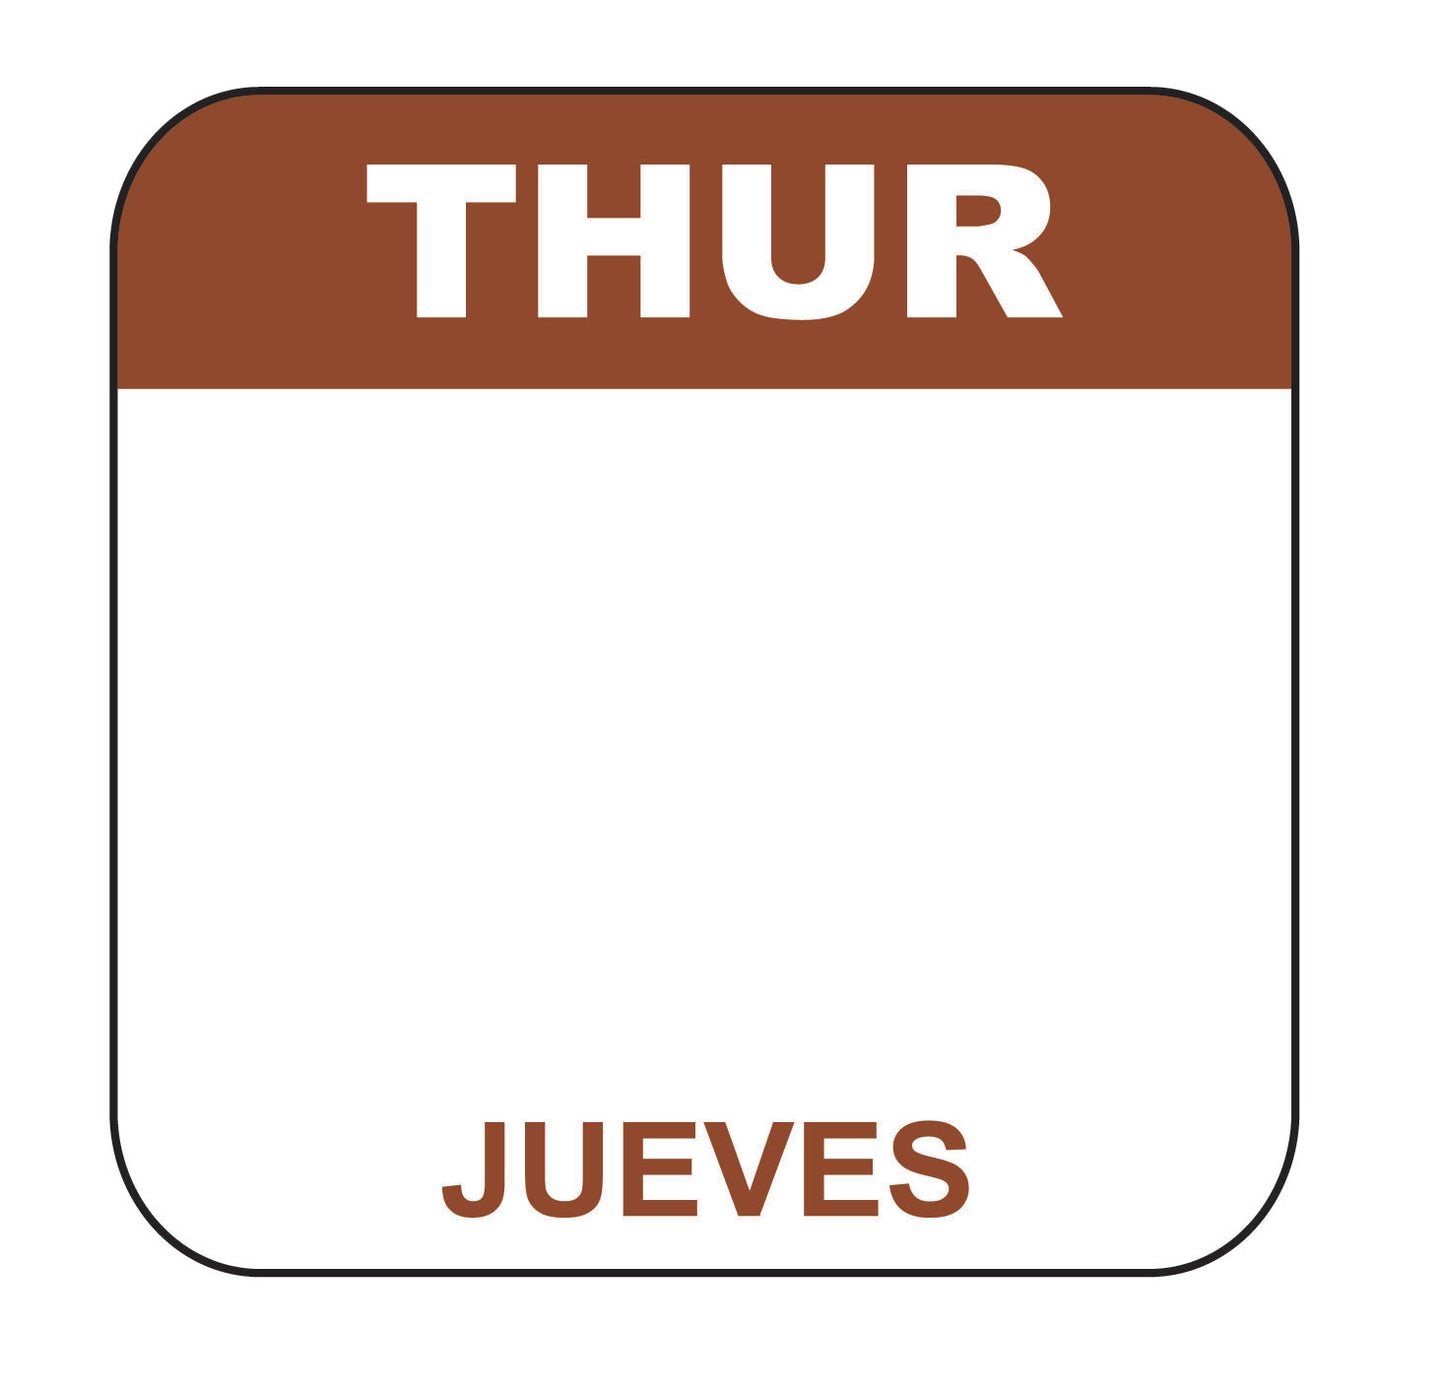 Thursday - Jueves 1" x 1" Dissolvable Date Label